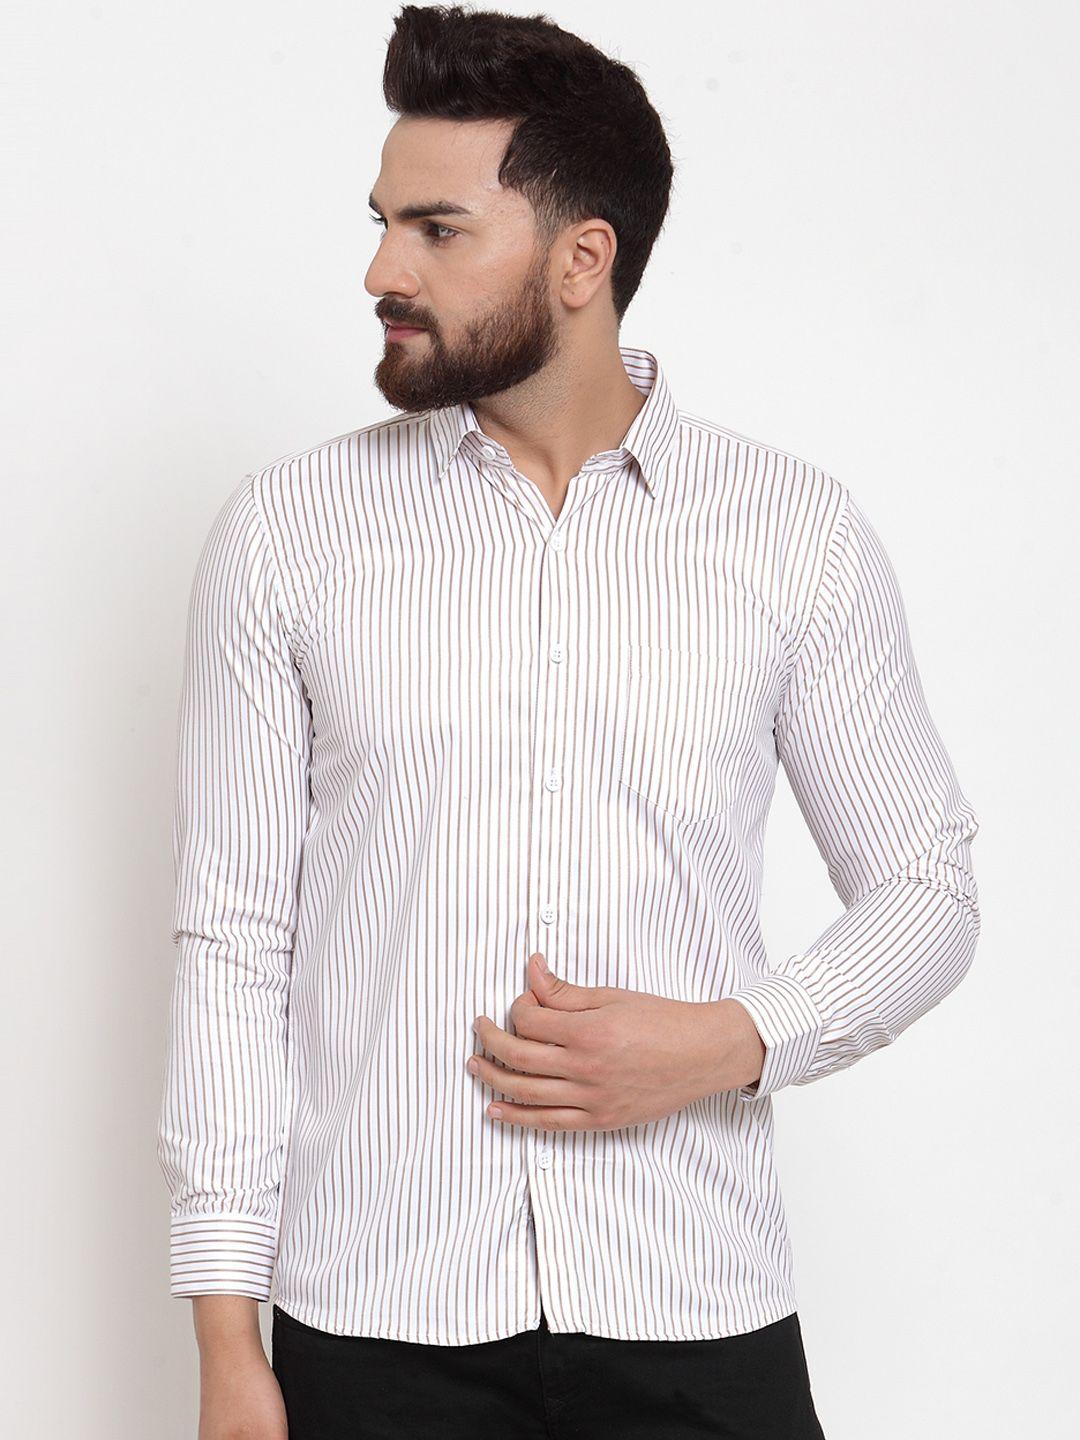 jainish-men-white-&-brown-regular-fit-striped-casual-shirt